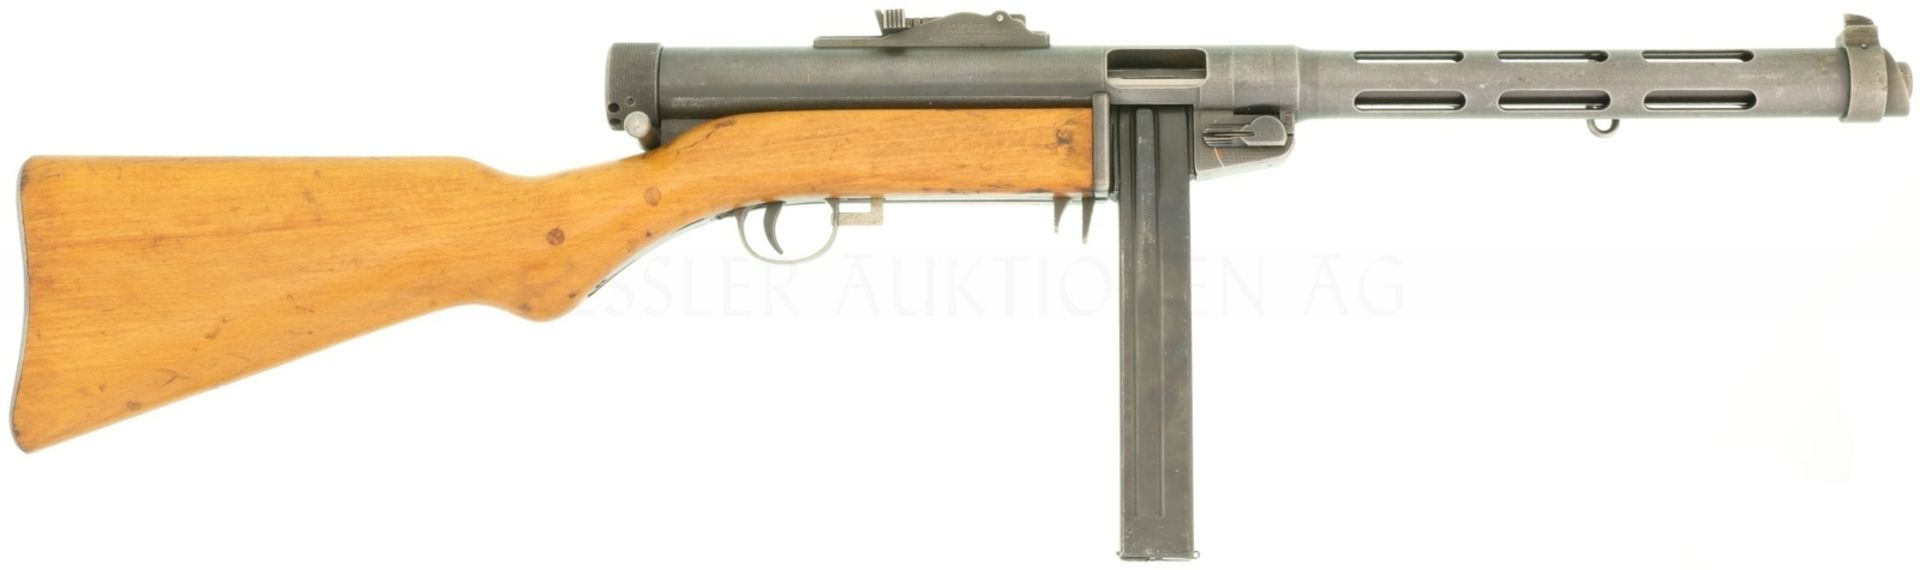 Maschinenpistole, Tikkakoski Suomi, MP 43/44, Kal. 9mmP